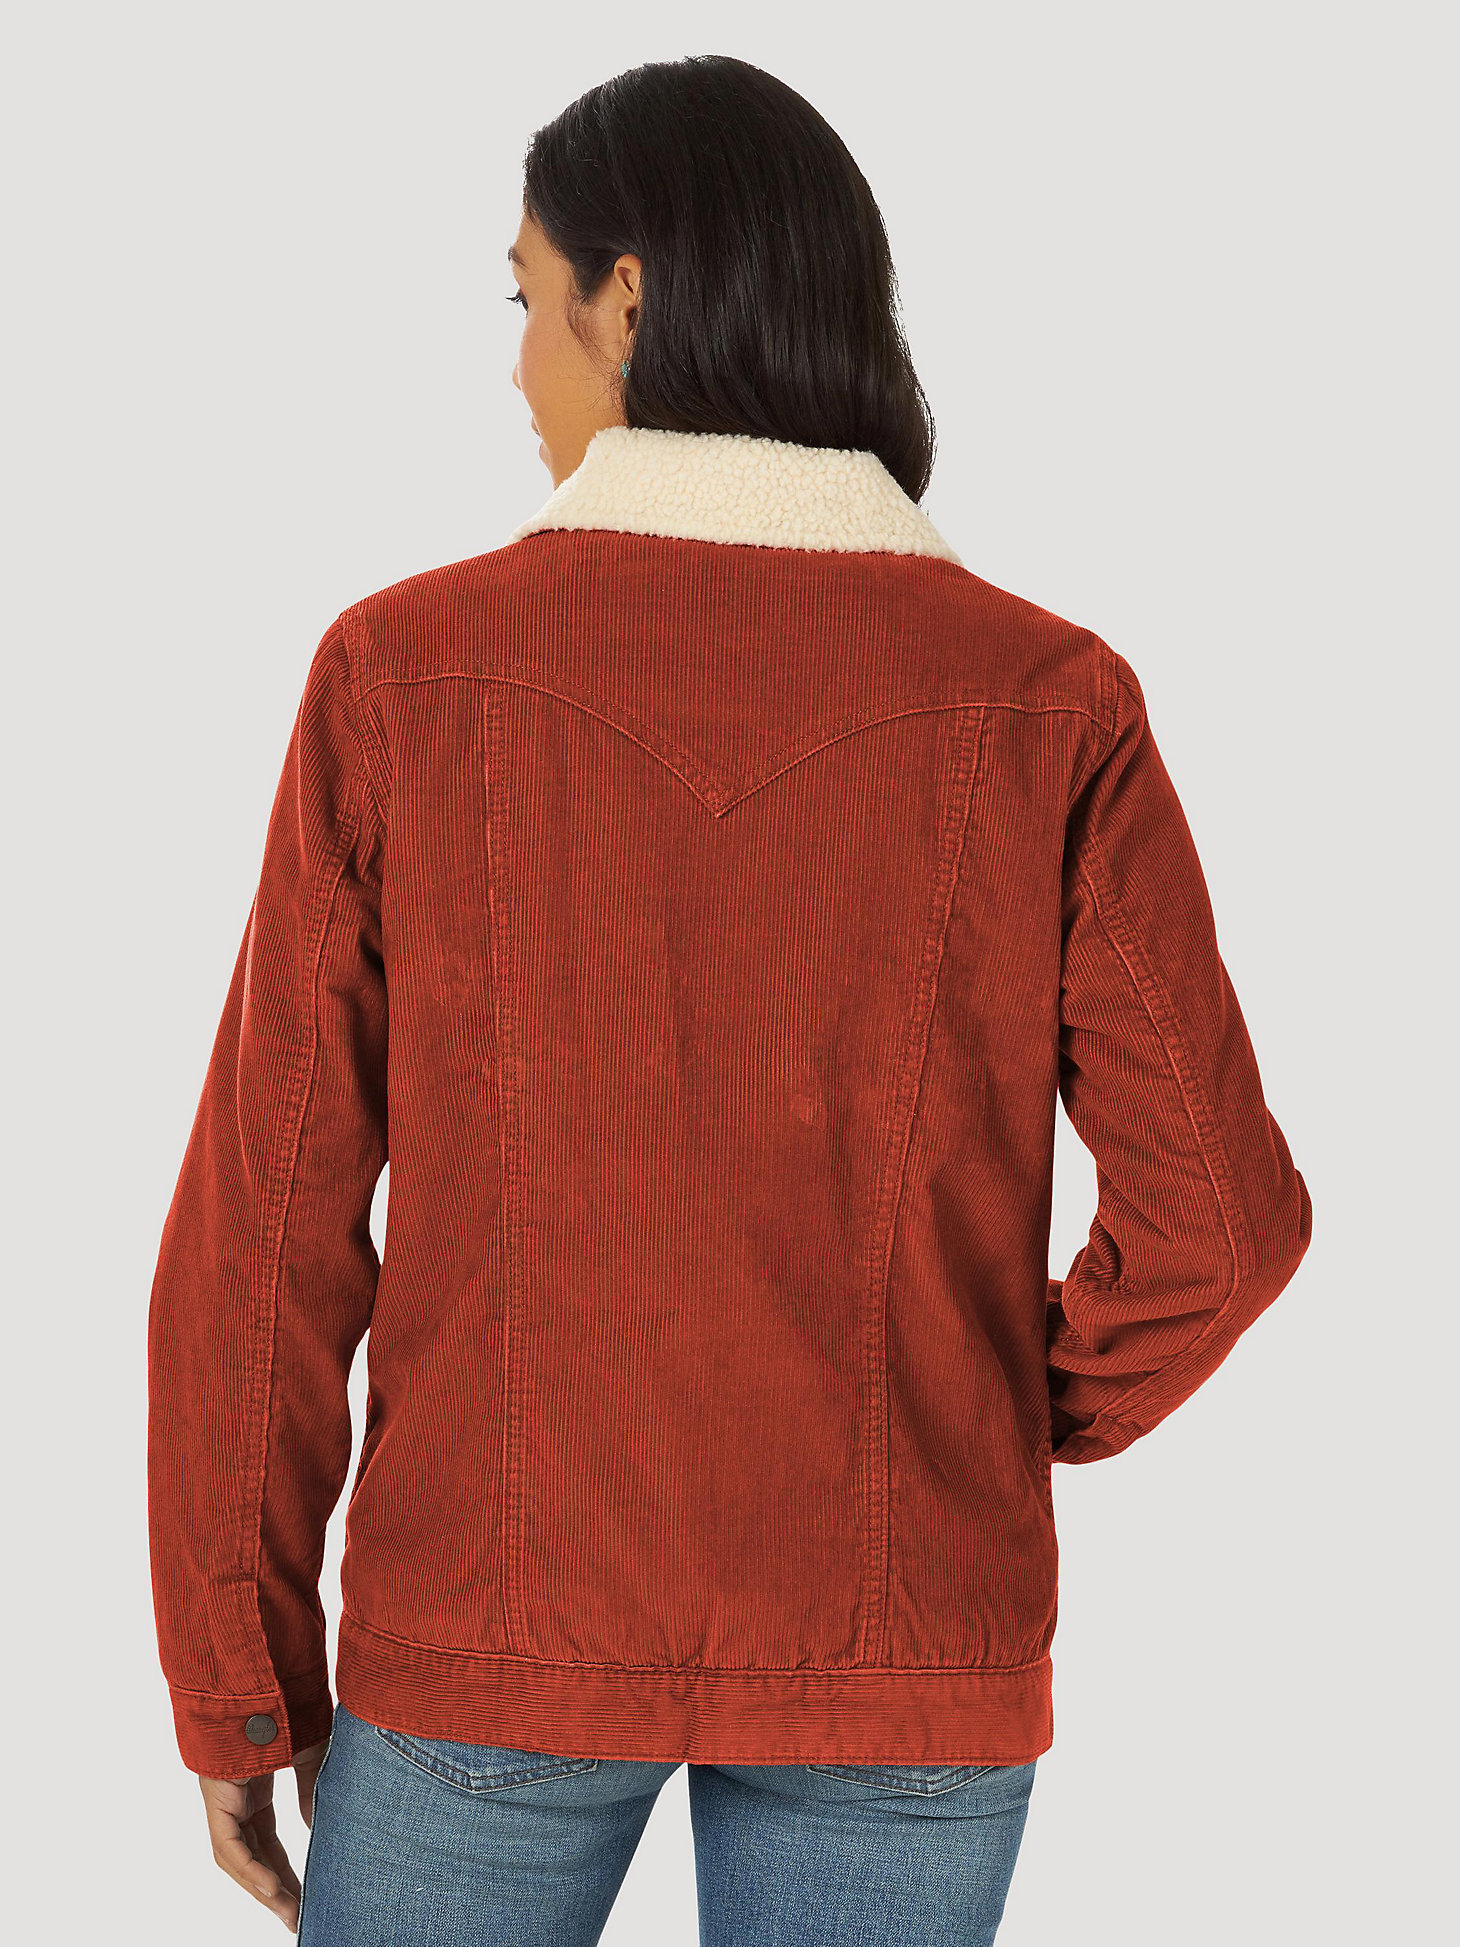 Women's Wrangler® Sherpa Lined Barn Jacket in rust alternative view 7